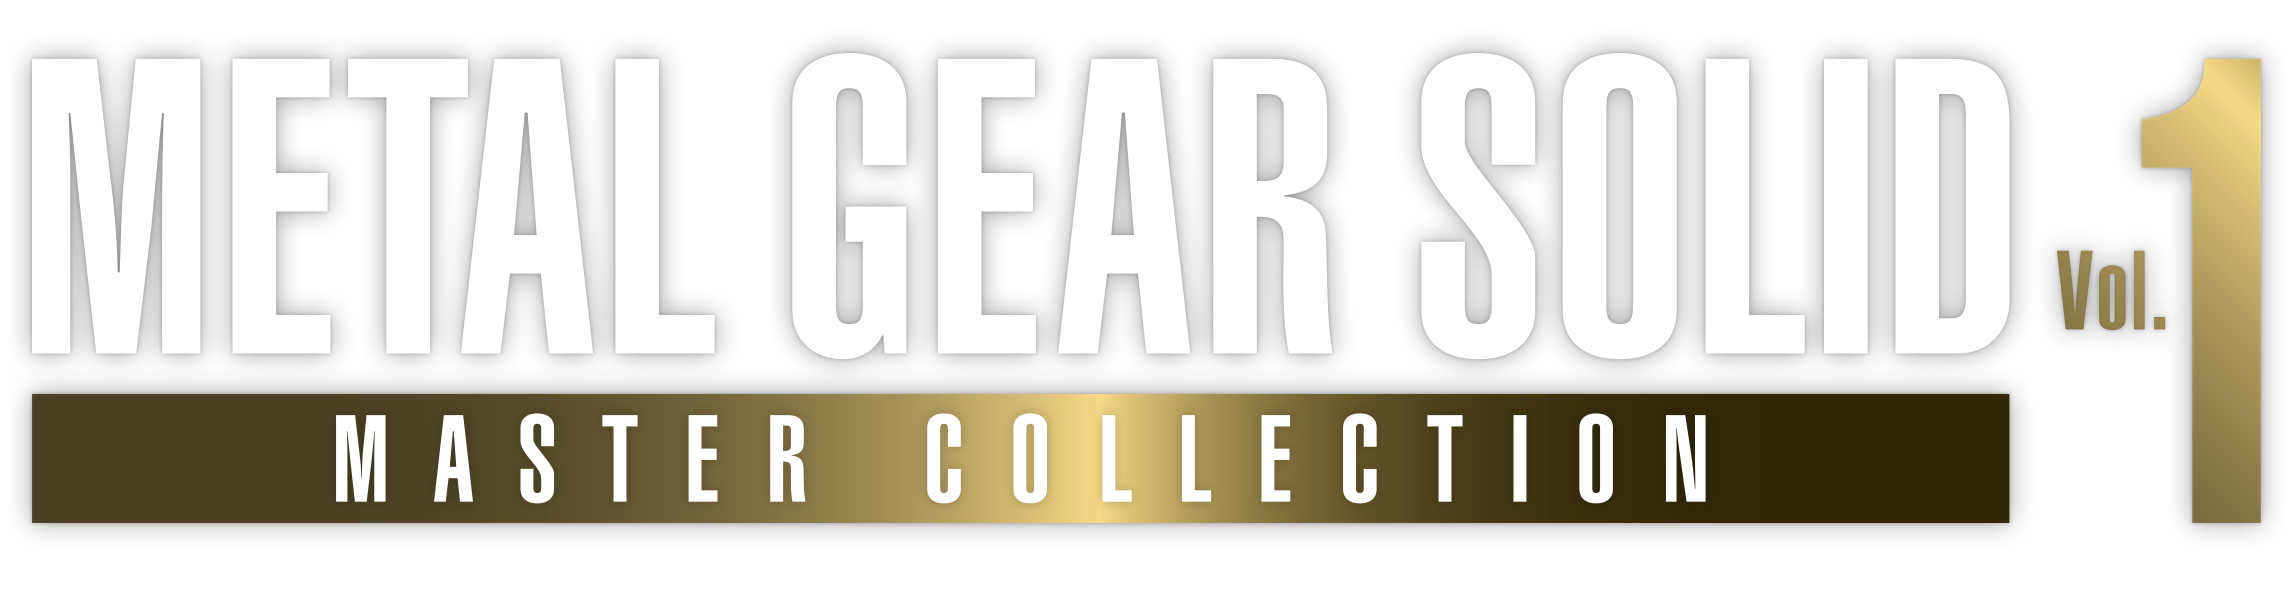 Análisis de Metal Gear Solid: Master Collection Vol. 1 para PS4